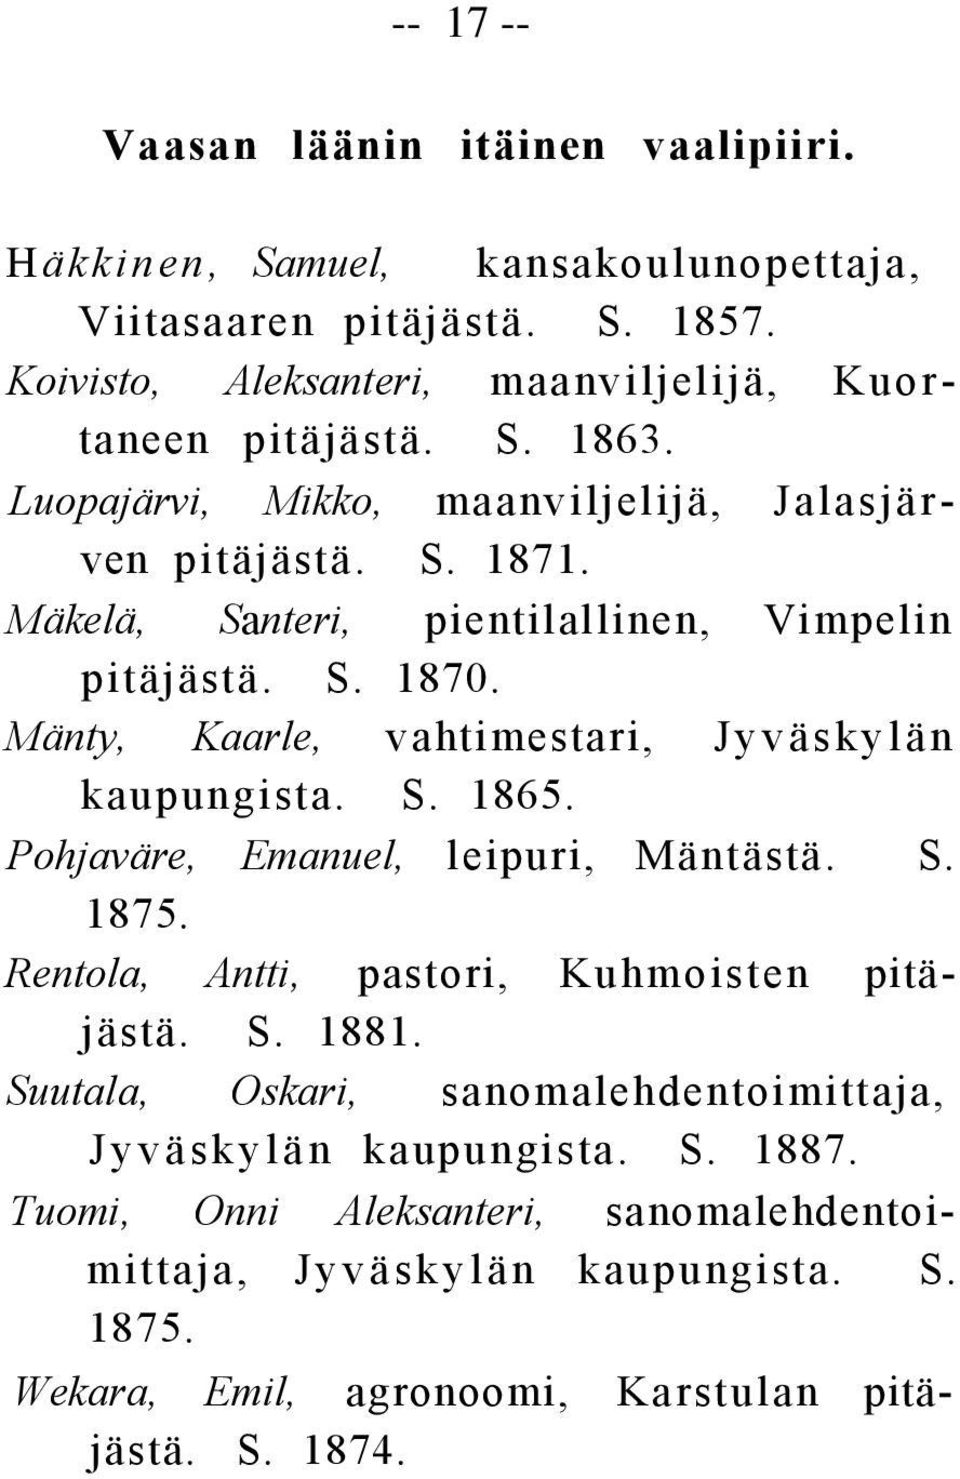 Mänty, Kaarle, vahtimestari, Jyväskylän kaupungista. S. 1865. Pohjaväre, Emanuel, leipuri, Mäntästä. S. 1875. Rentola, Antti, pastori, Kuhmoisten pitäjästä. S. 1881.